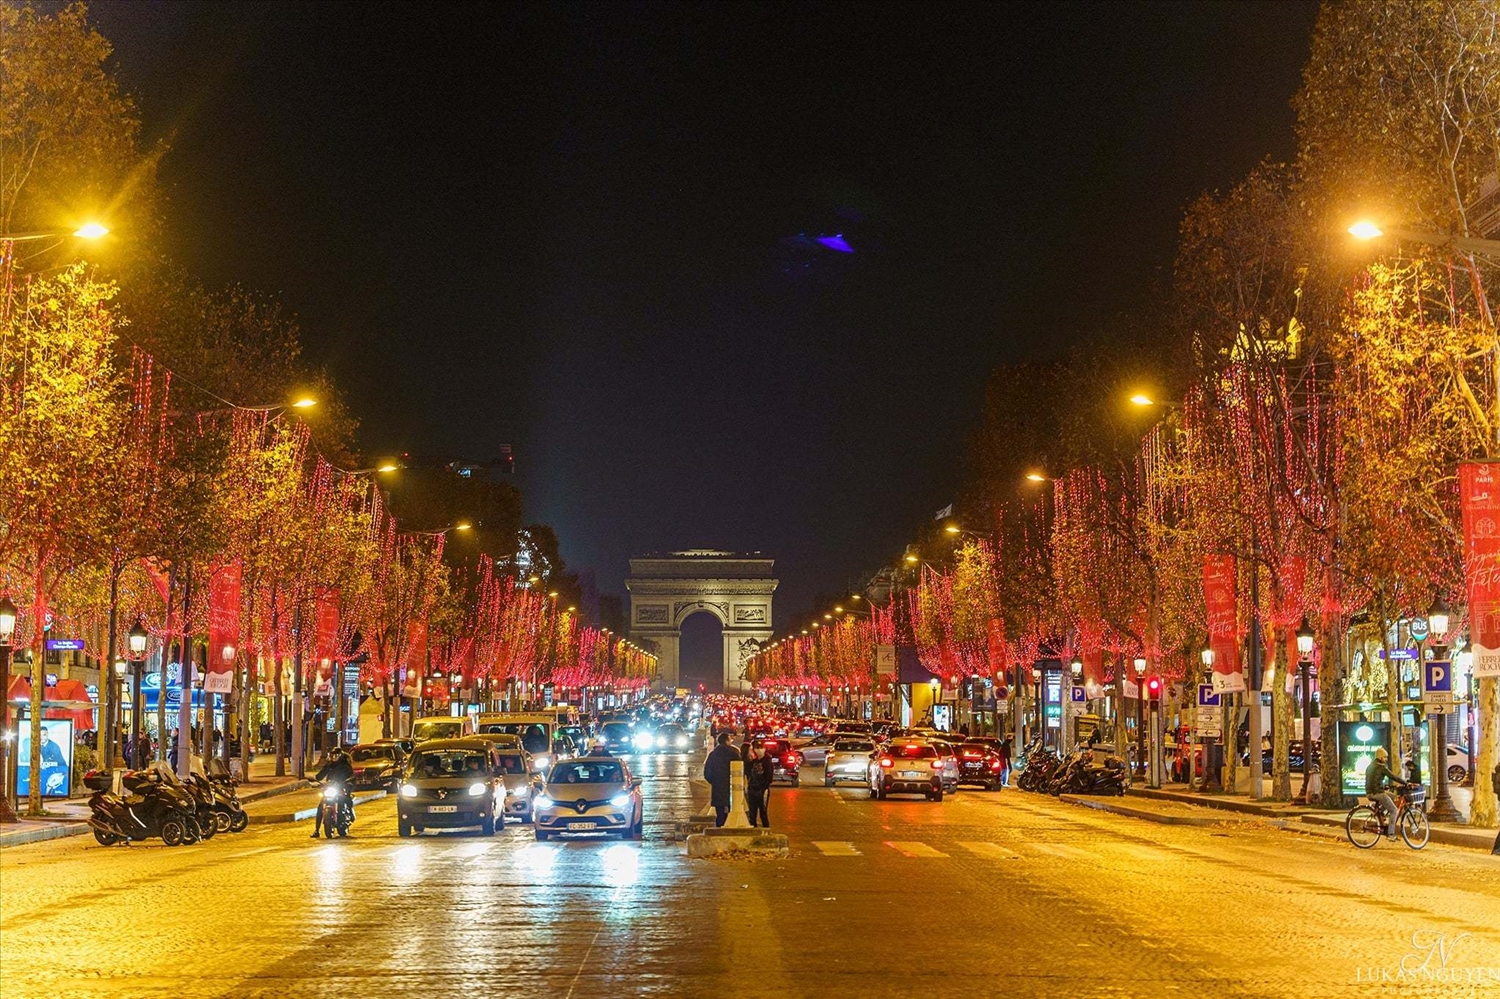 Mùa Giáng sinh 2021 chính thức bắt đầu ở Pháp khi 400 cây xanh dọc đại lộ Champs Élysées ở thủ đô Paris đã được thắp sáng hôm 21/11.